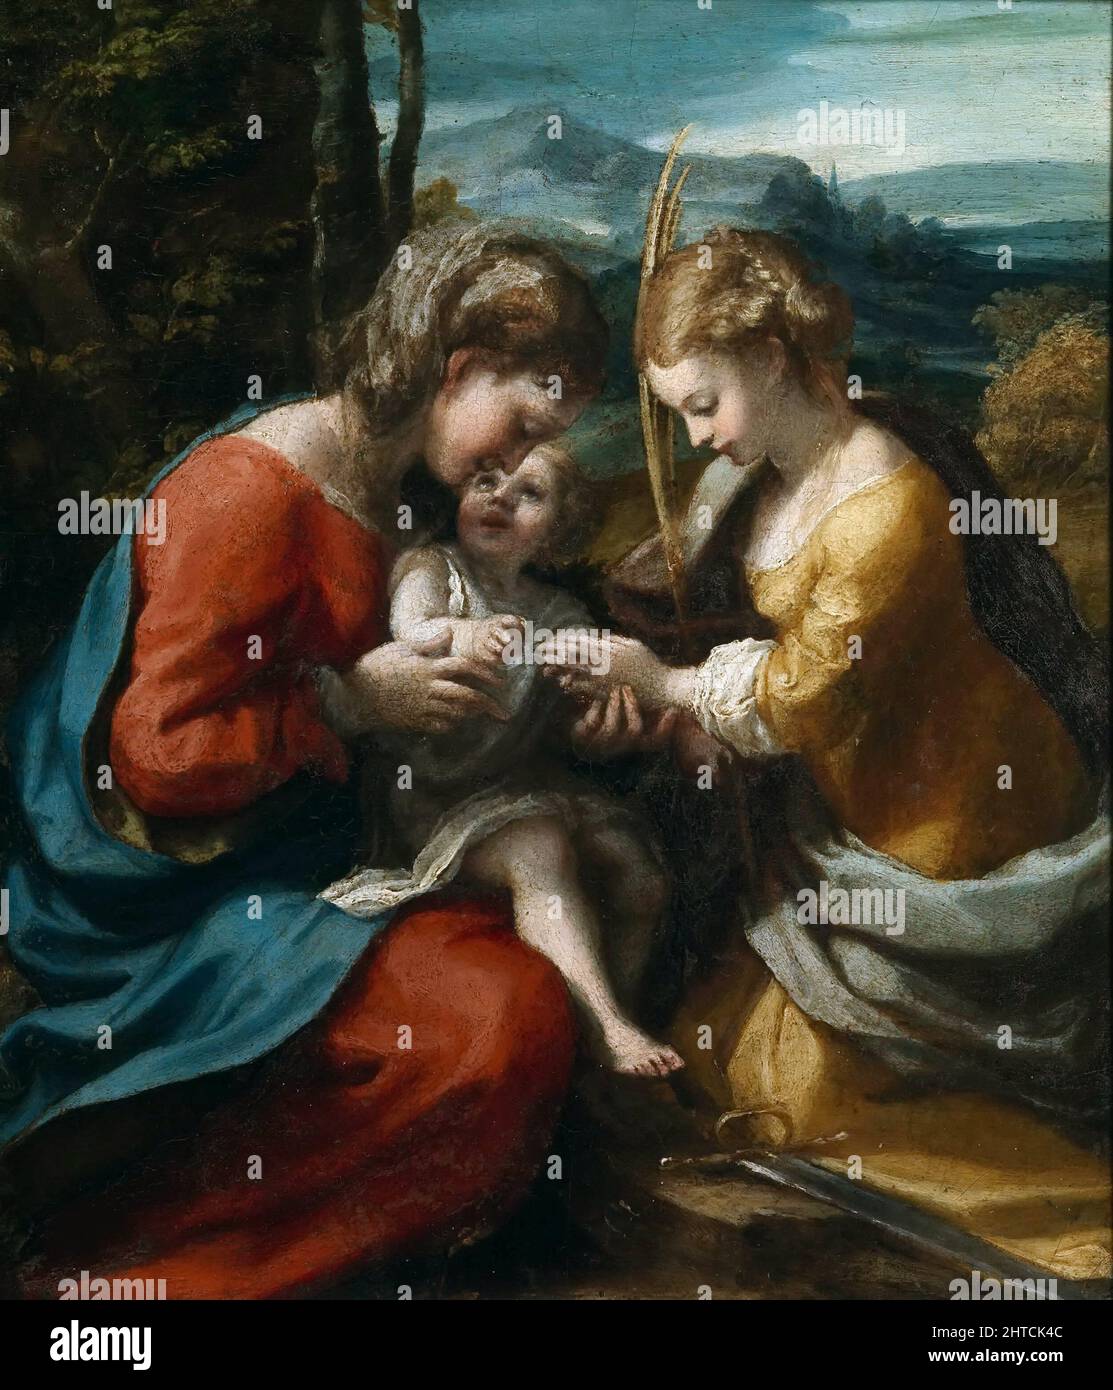 El matrimonio místico de Santa Catalina, 1517-1518. Se encuentra en la Colección del Museo di Capodimonte, Nápoles. Foto de stock